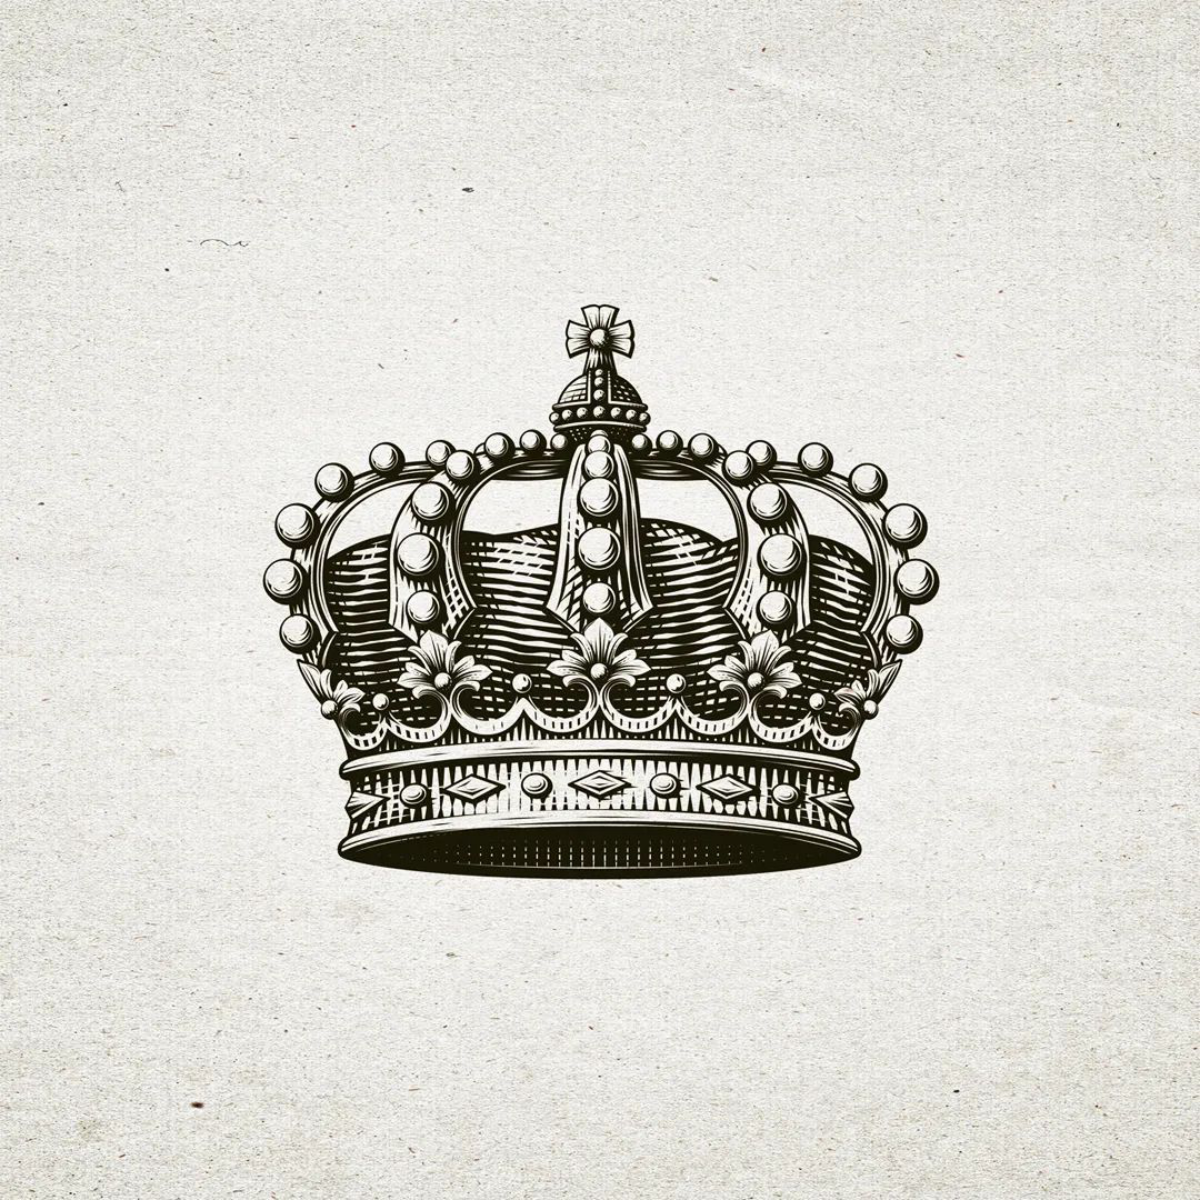 detailed kings crown